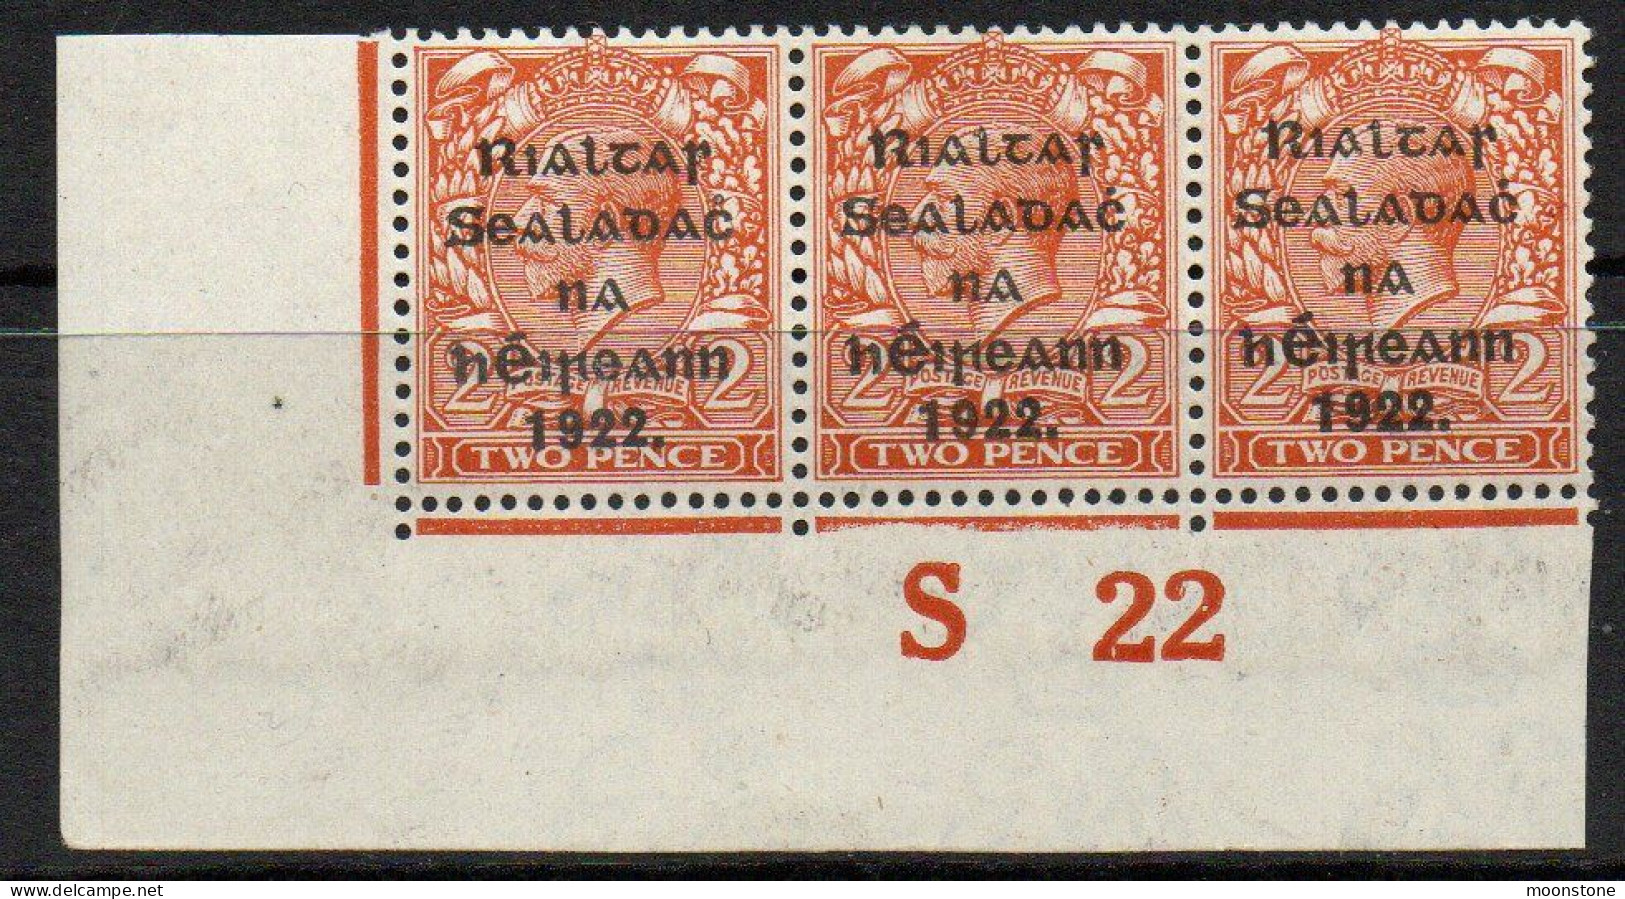 Ireland 1922 Thom Rialtas Overprint On 2d Orange Die II S22 Control Strip Of 3, MNH, SG 34 - Ungebraucht